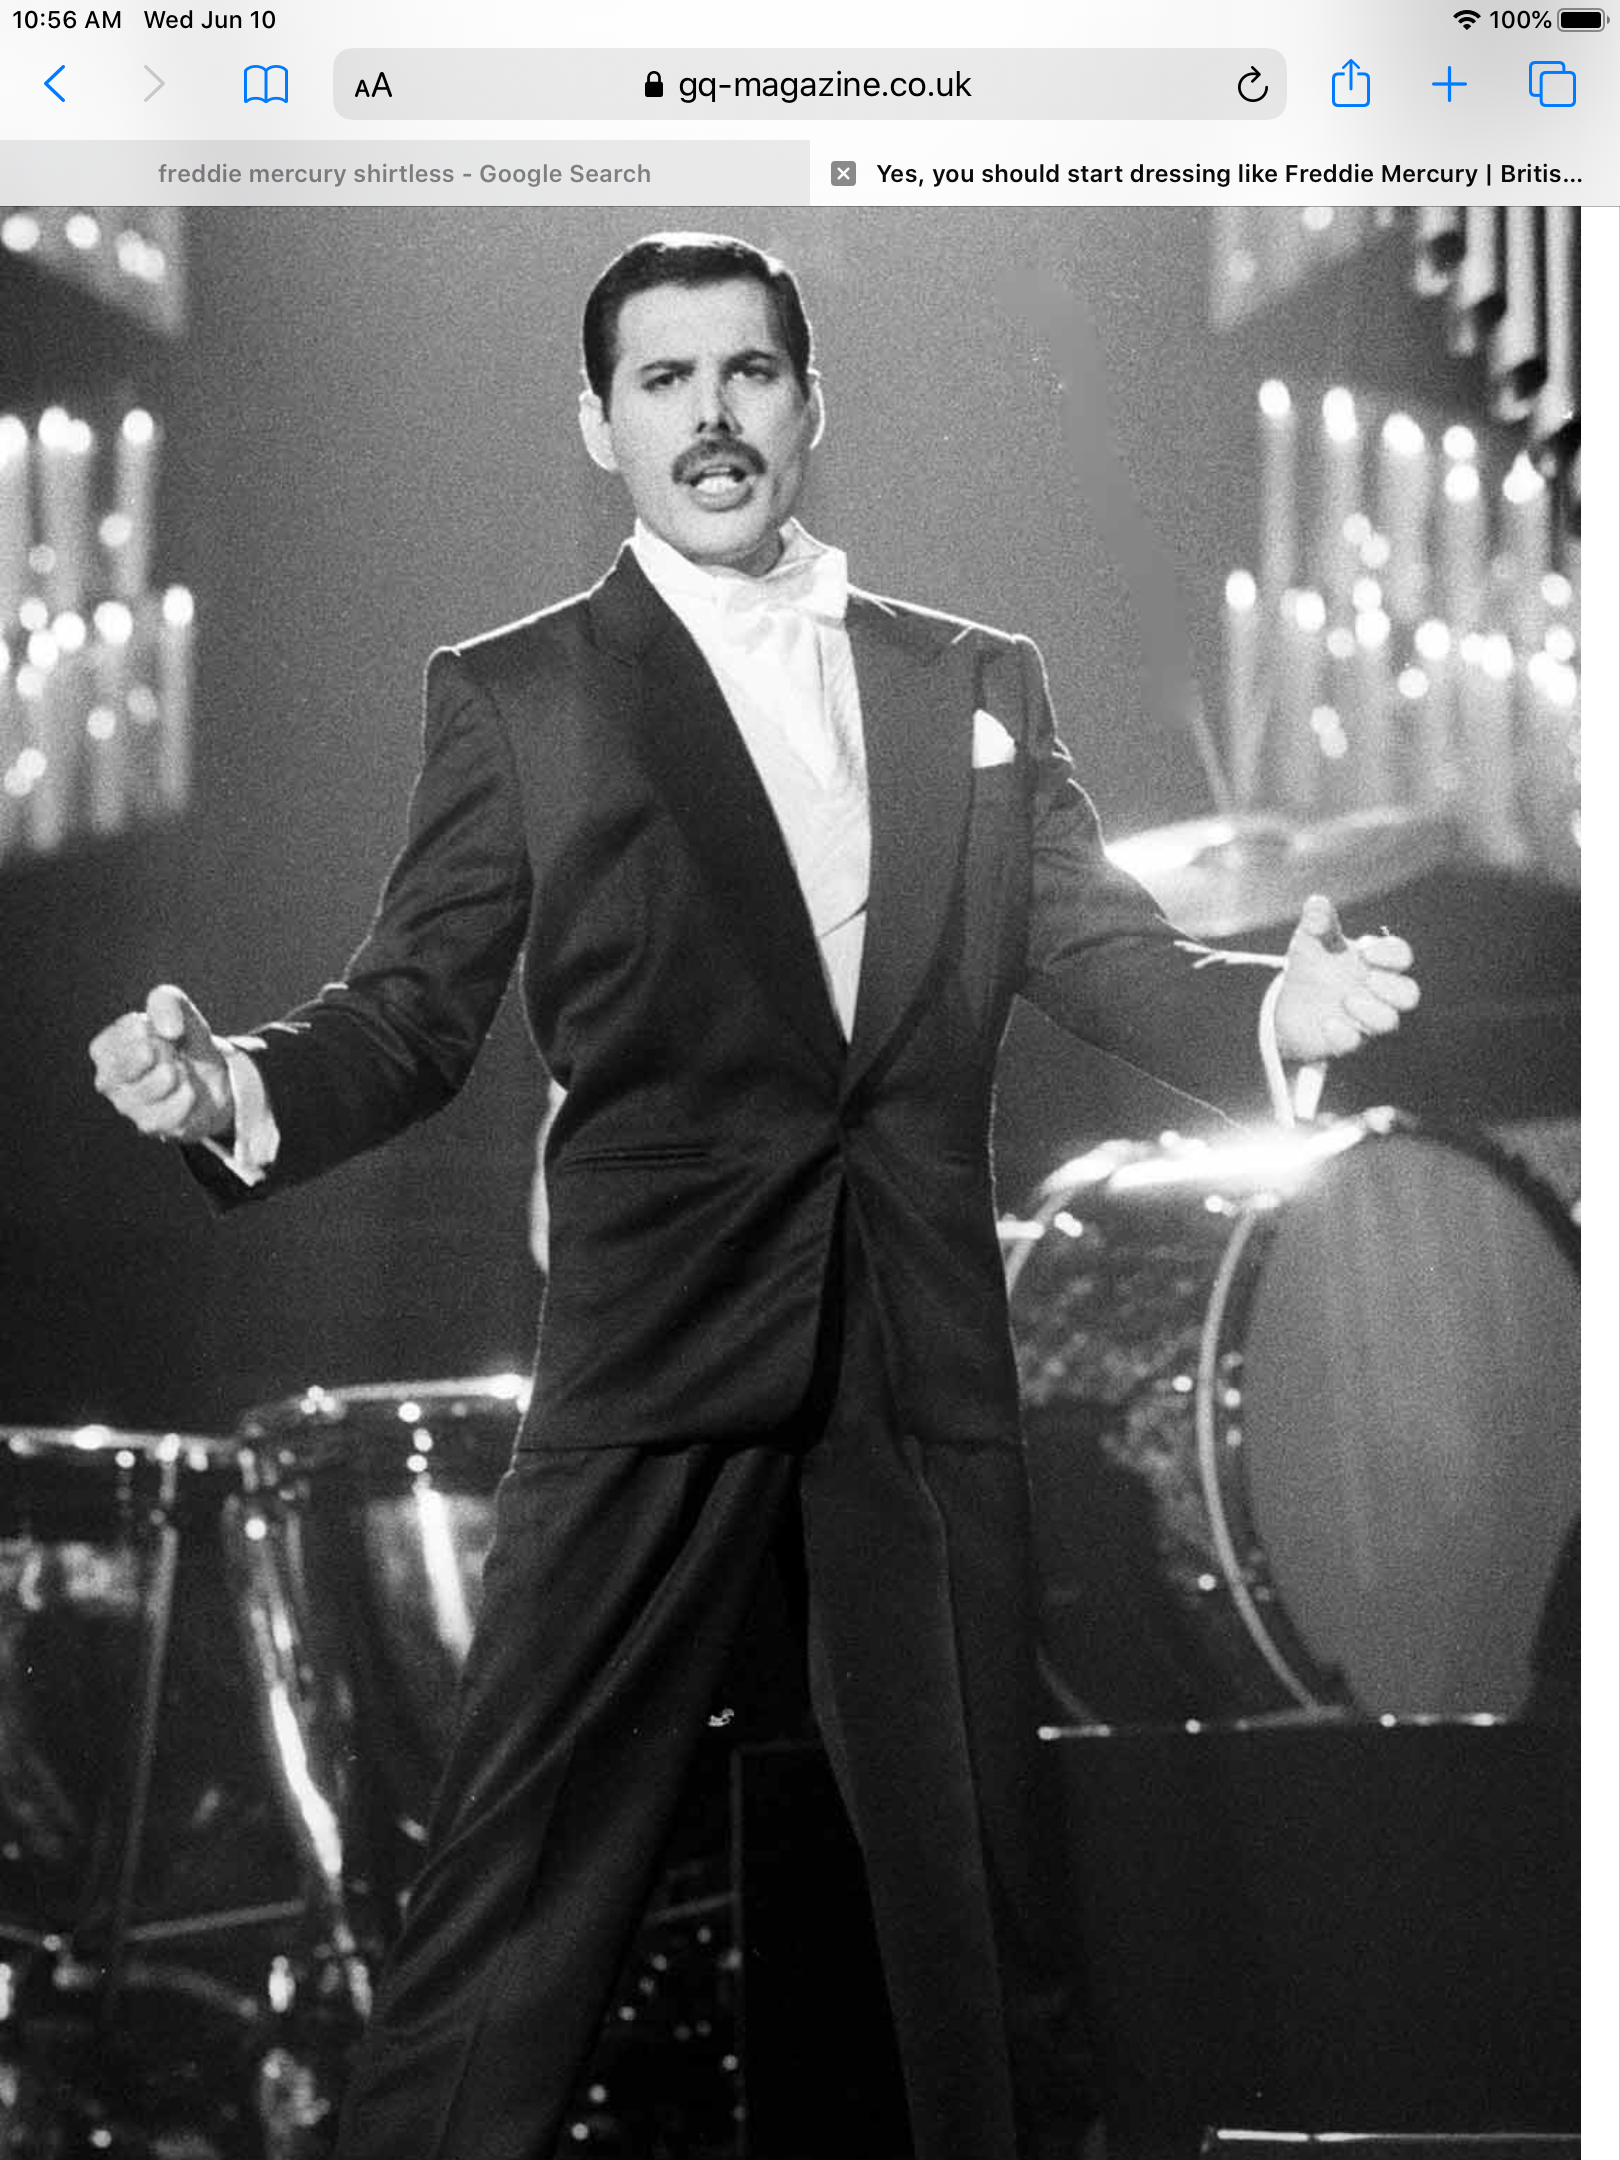 What looks best on Freddie? - Freddie Mercury - fanpop